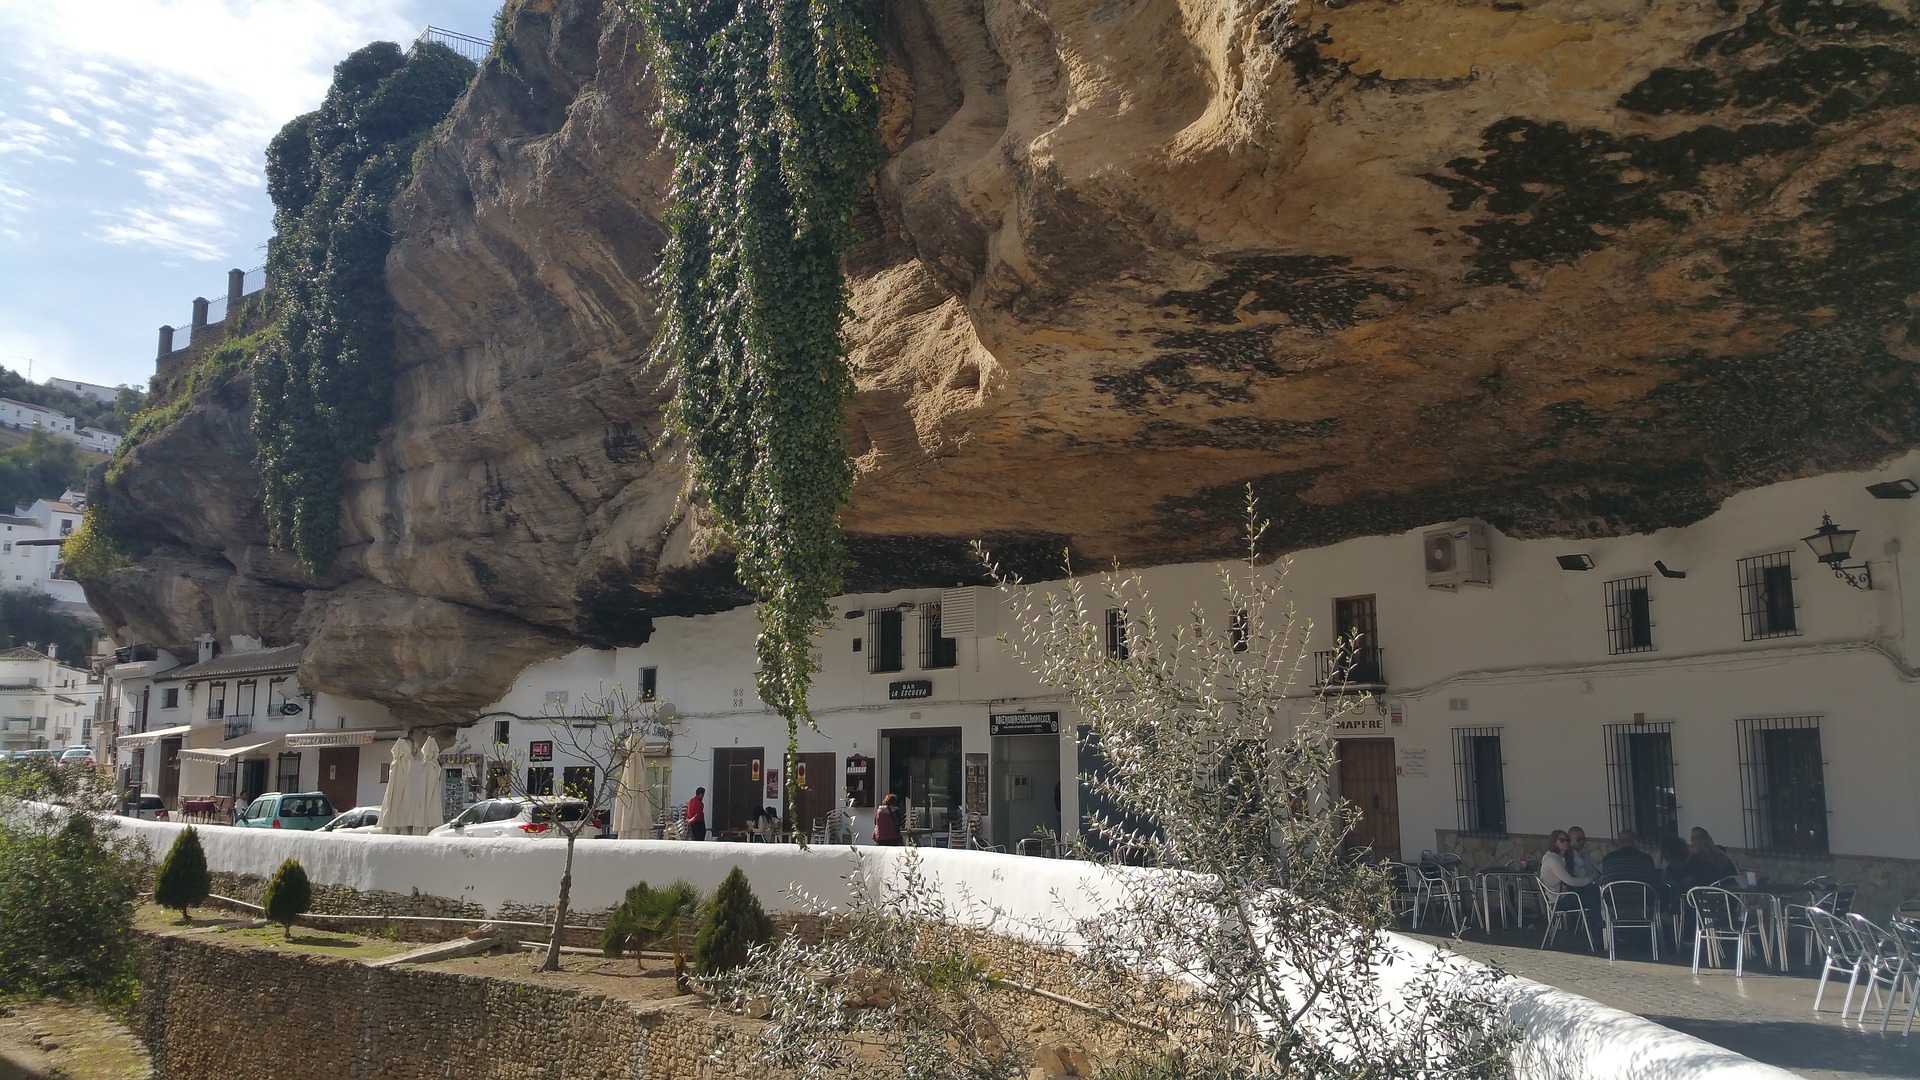 Read more about the article Setenil de las Bodegas, a cidade construída sob a rocha em Espanha